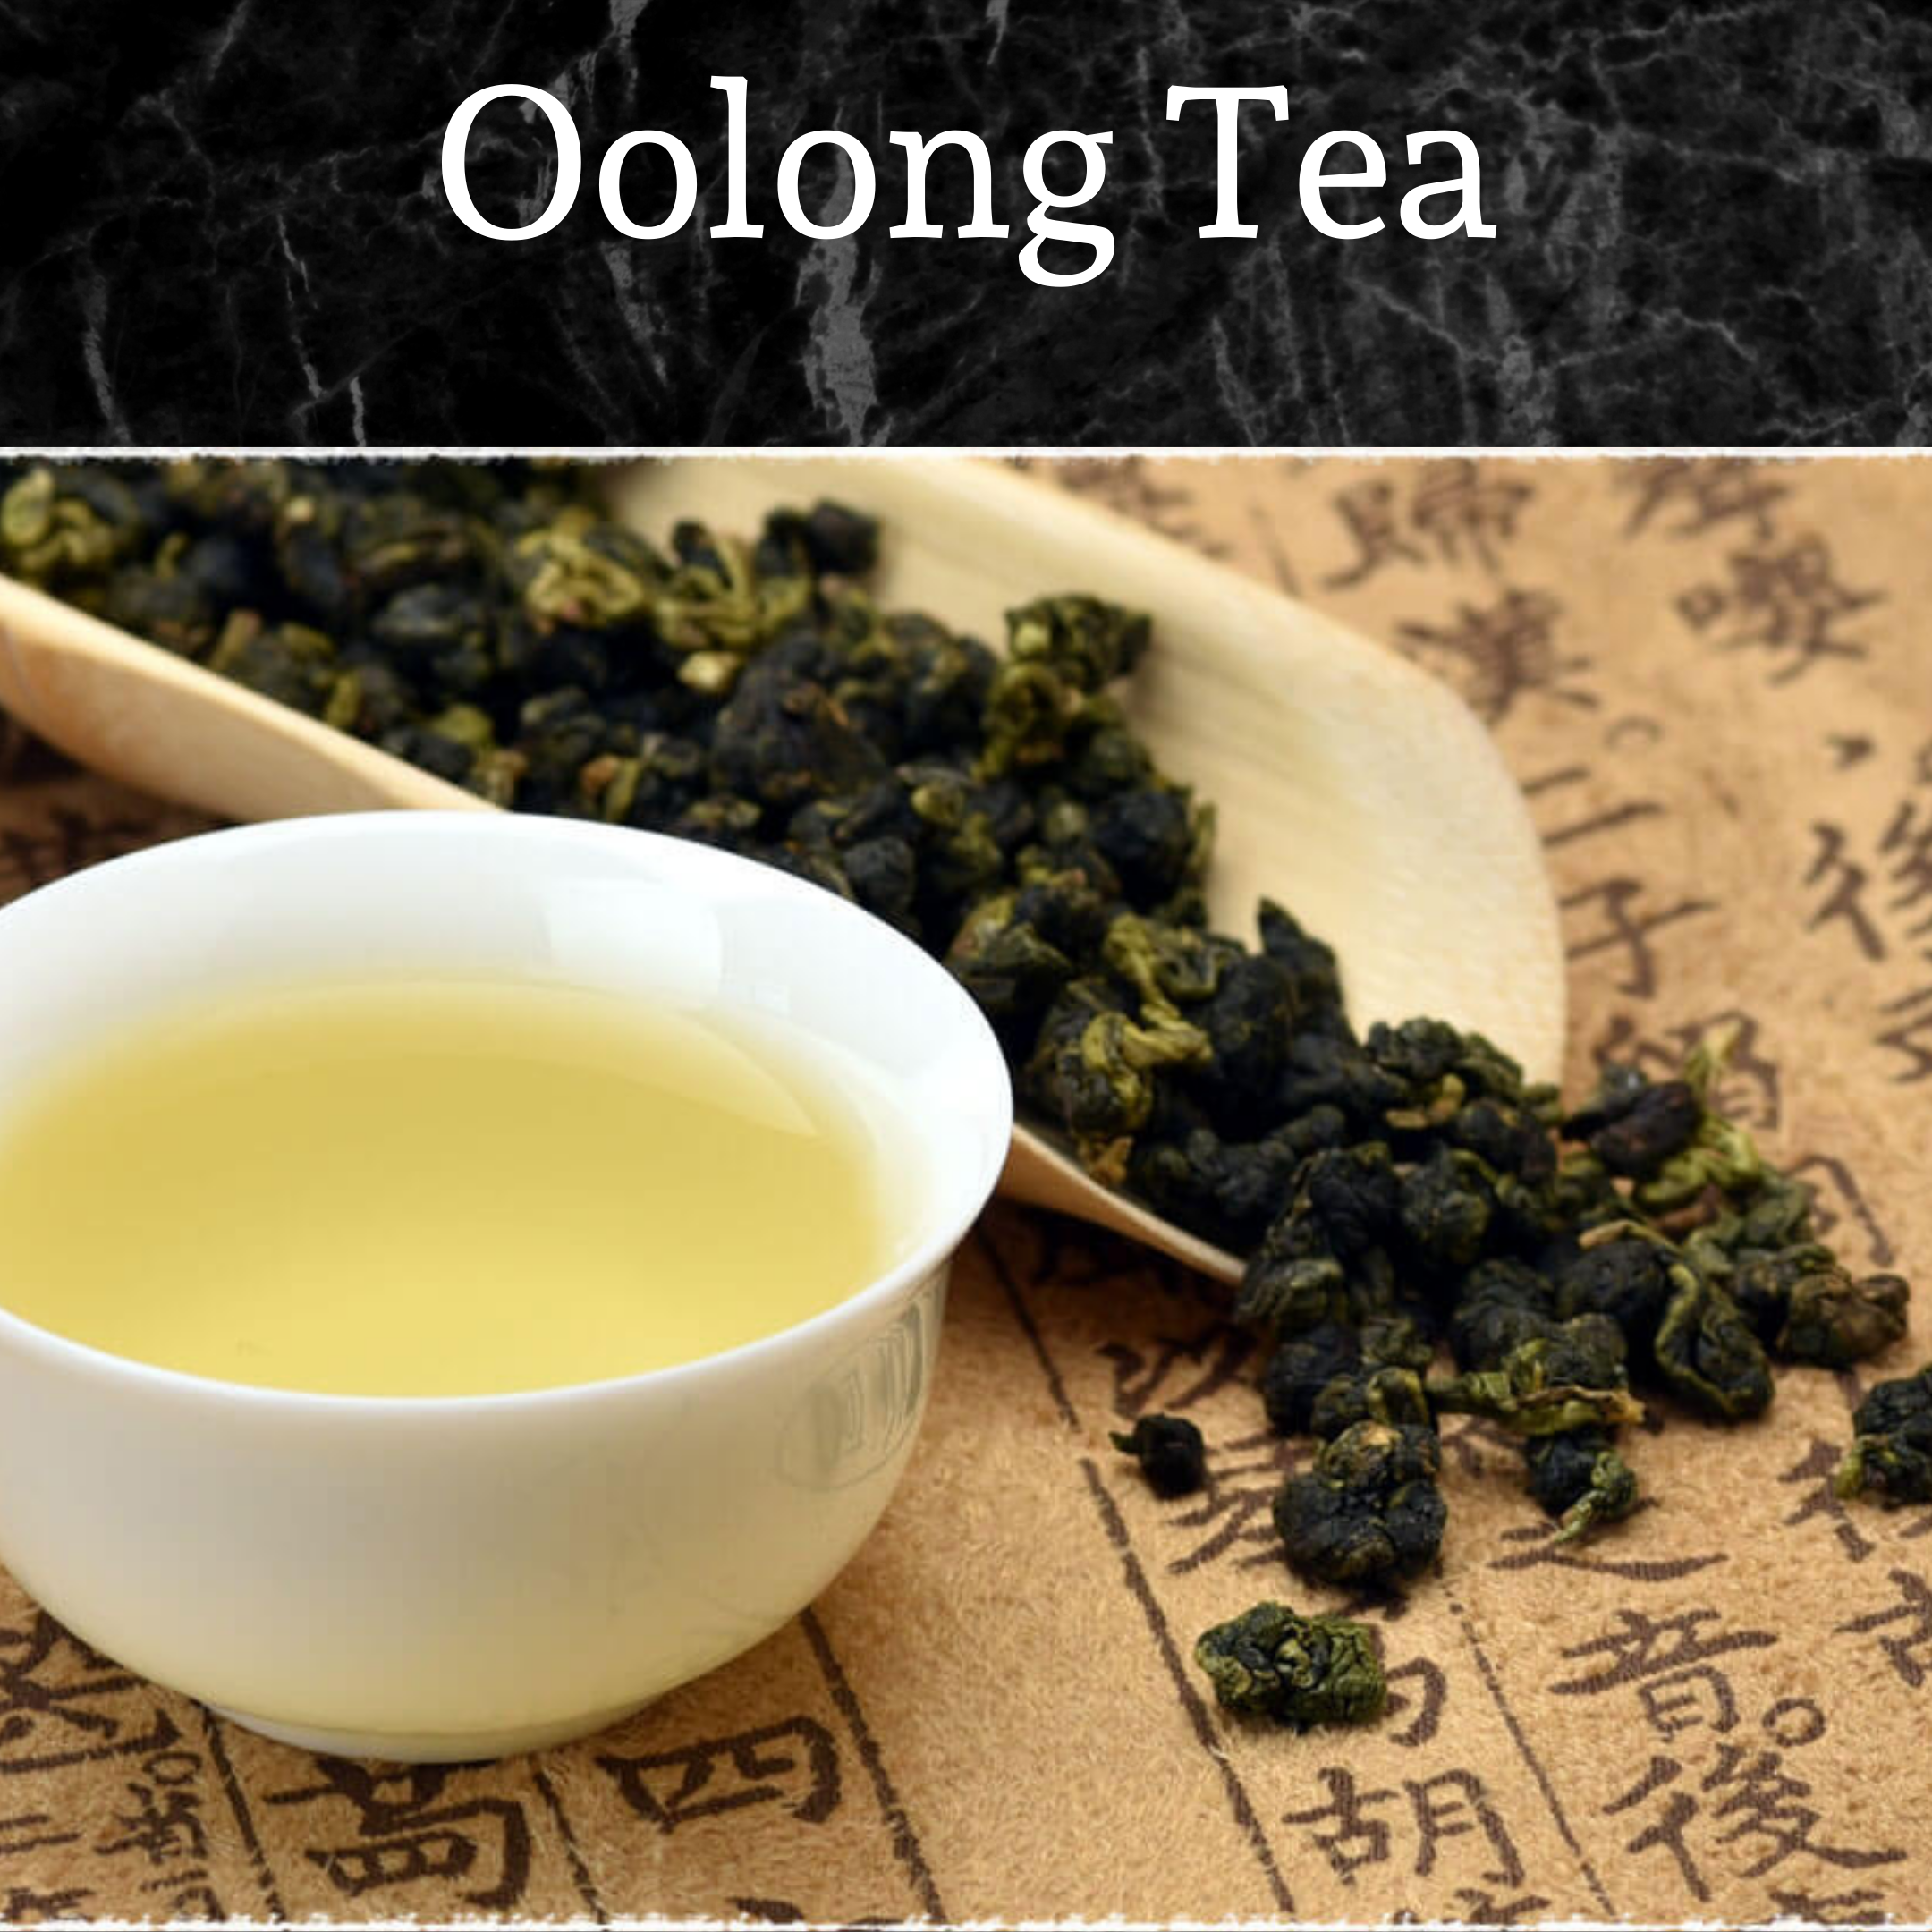 Oolong tea leaves and brewed tea 